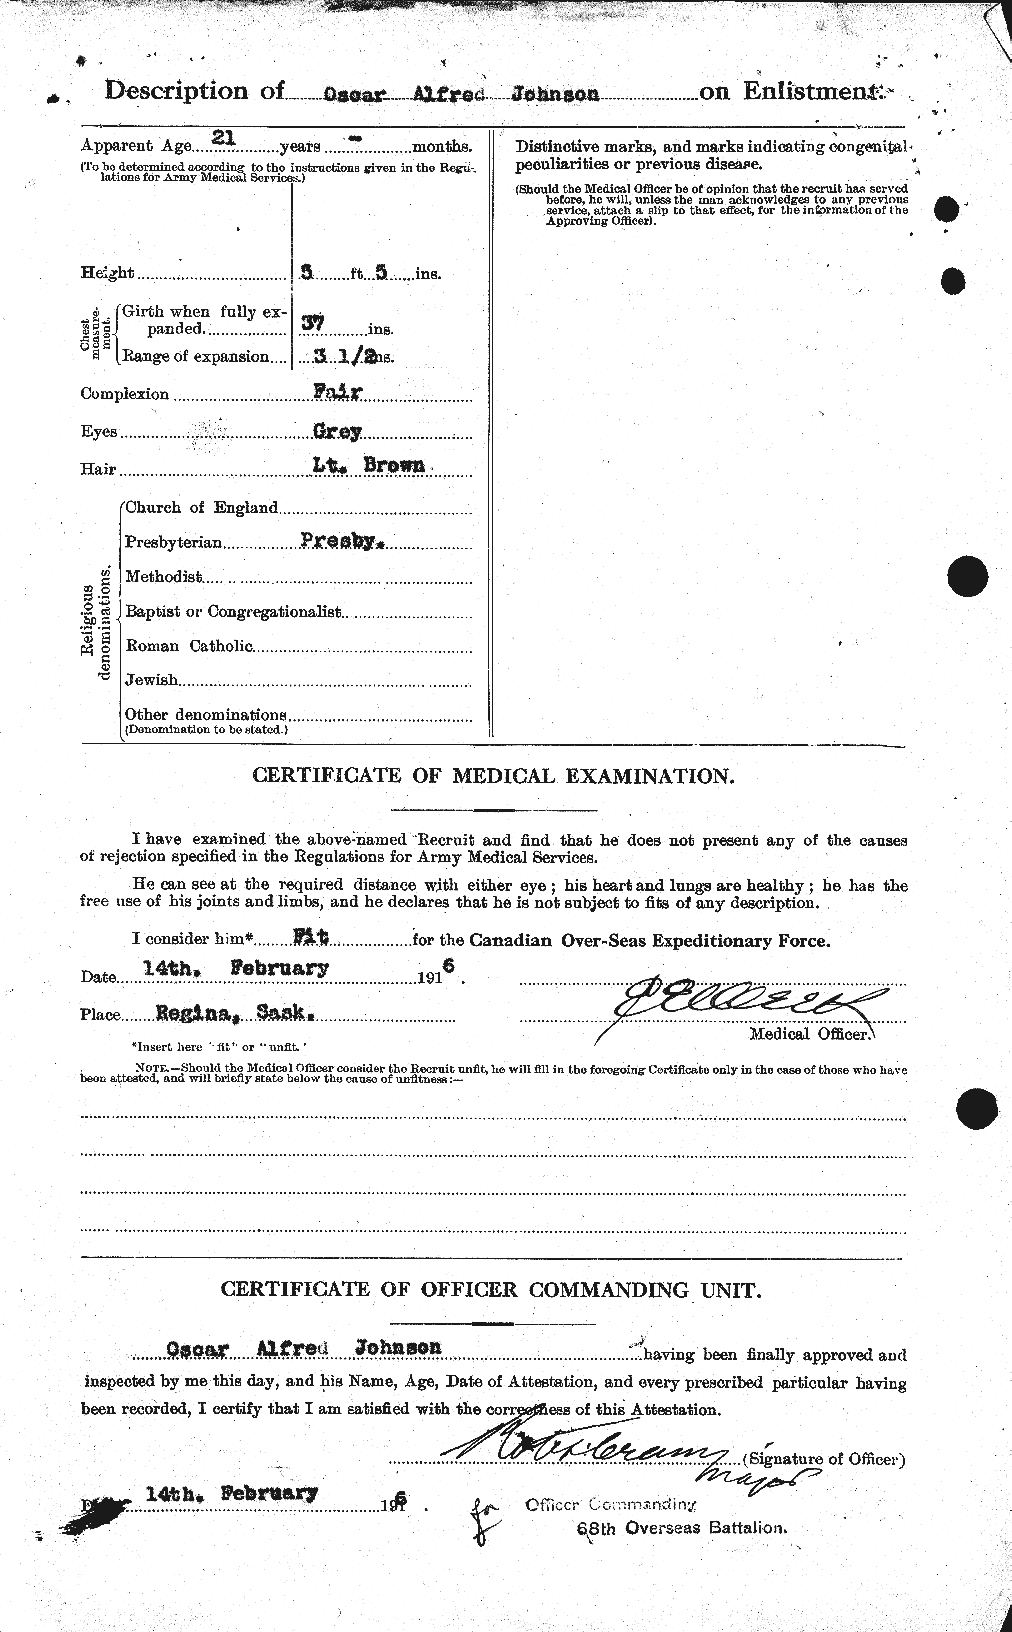 Dossiers du Personnel de la Première Guerre mondiale - CEC 417233b